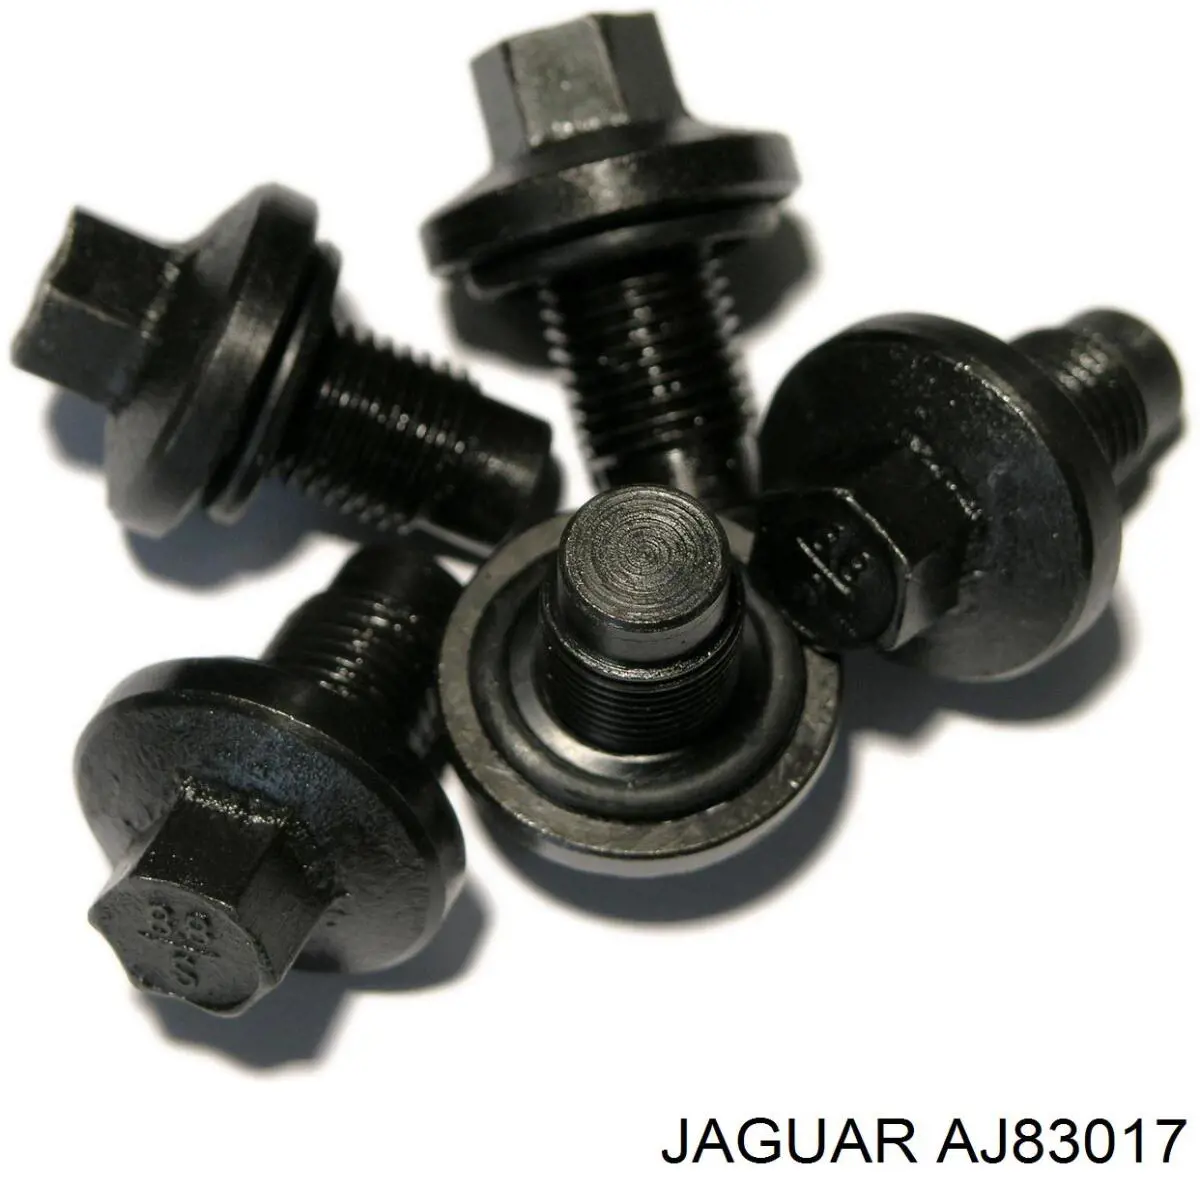 AJ83017 Jaguar tapón roscado, colector de aceite